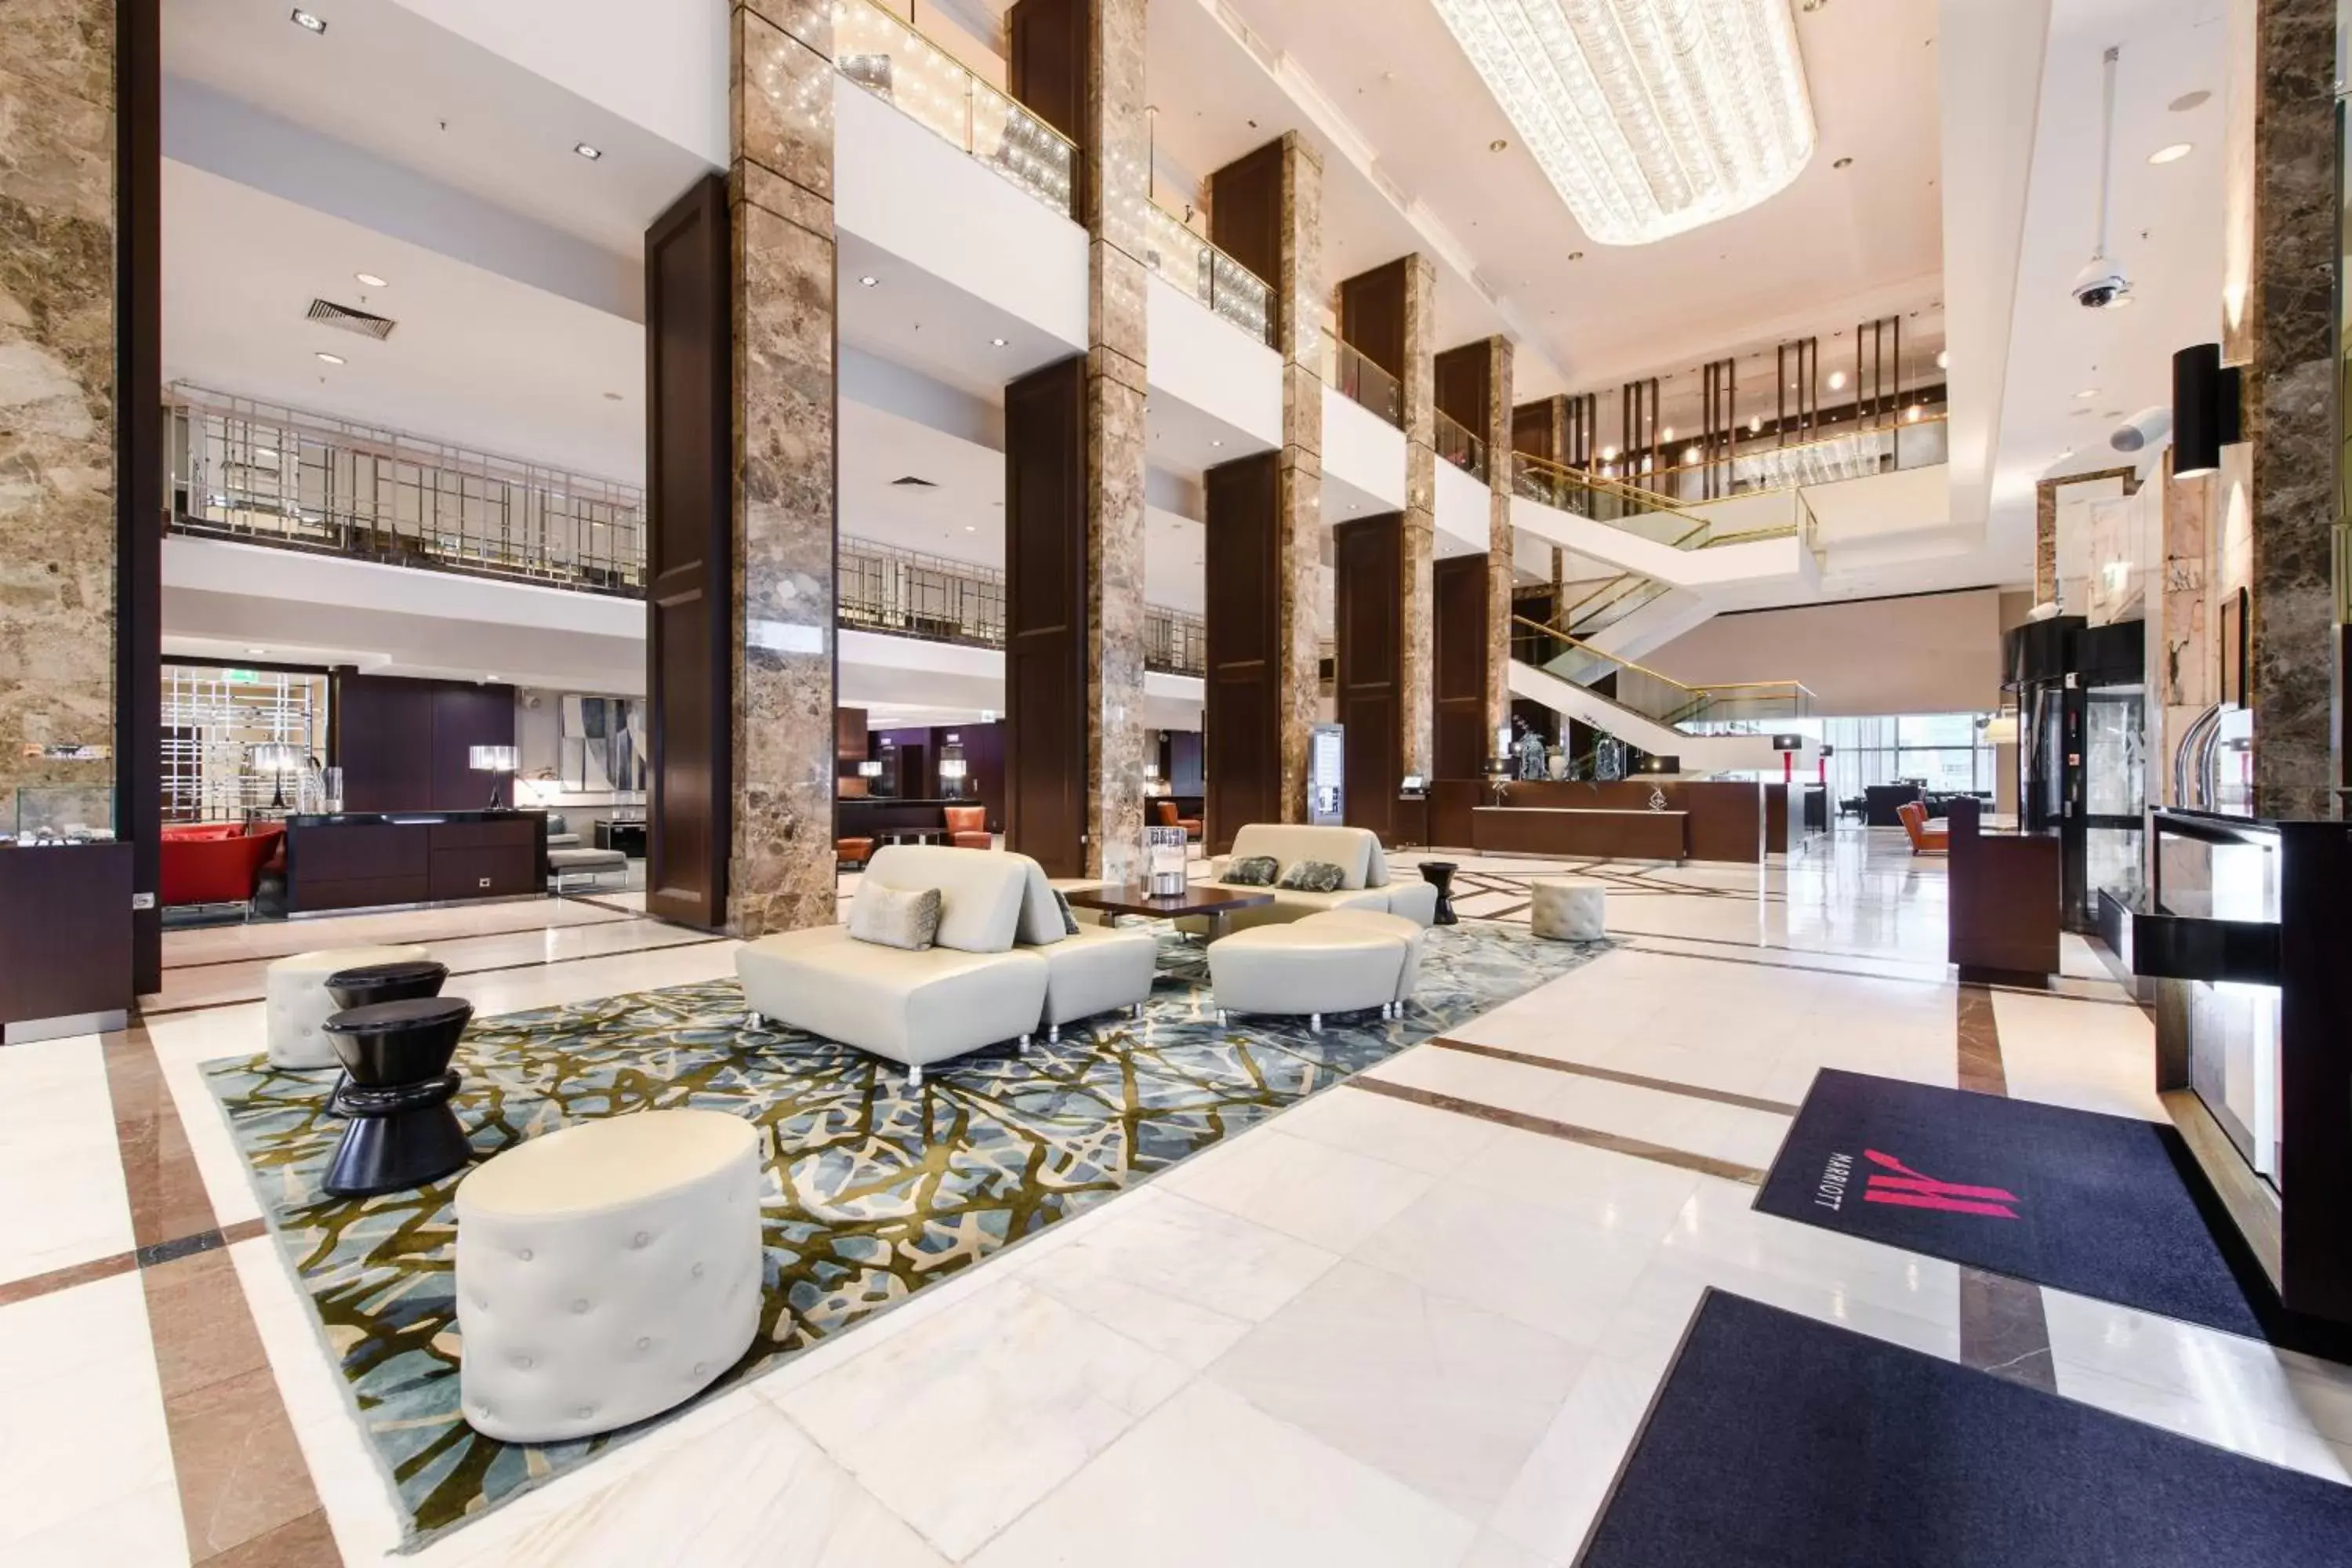 Lobby or reception in Warsaw Marriott Hotel